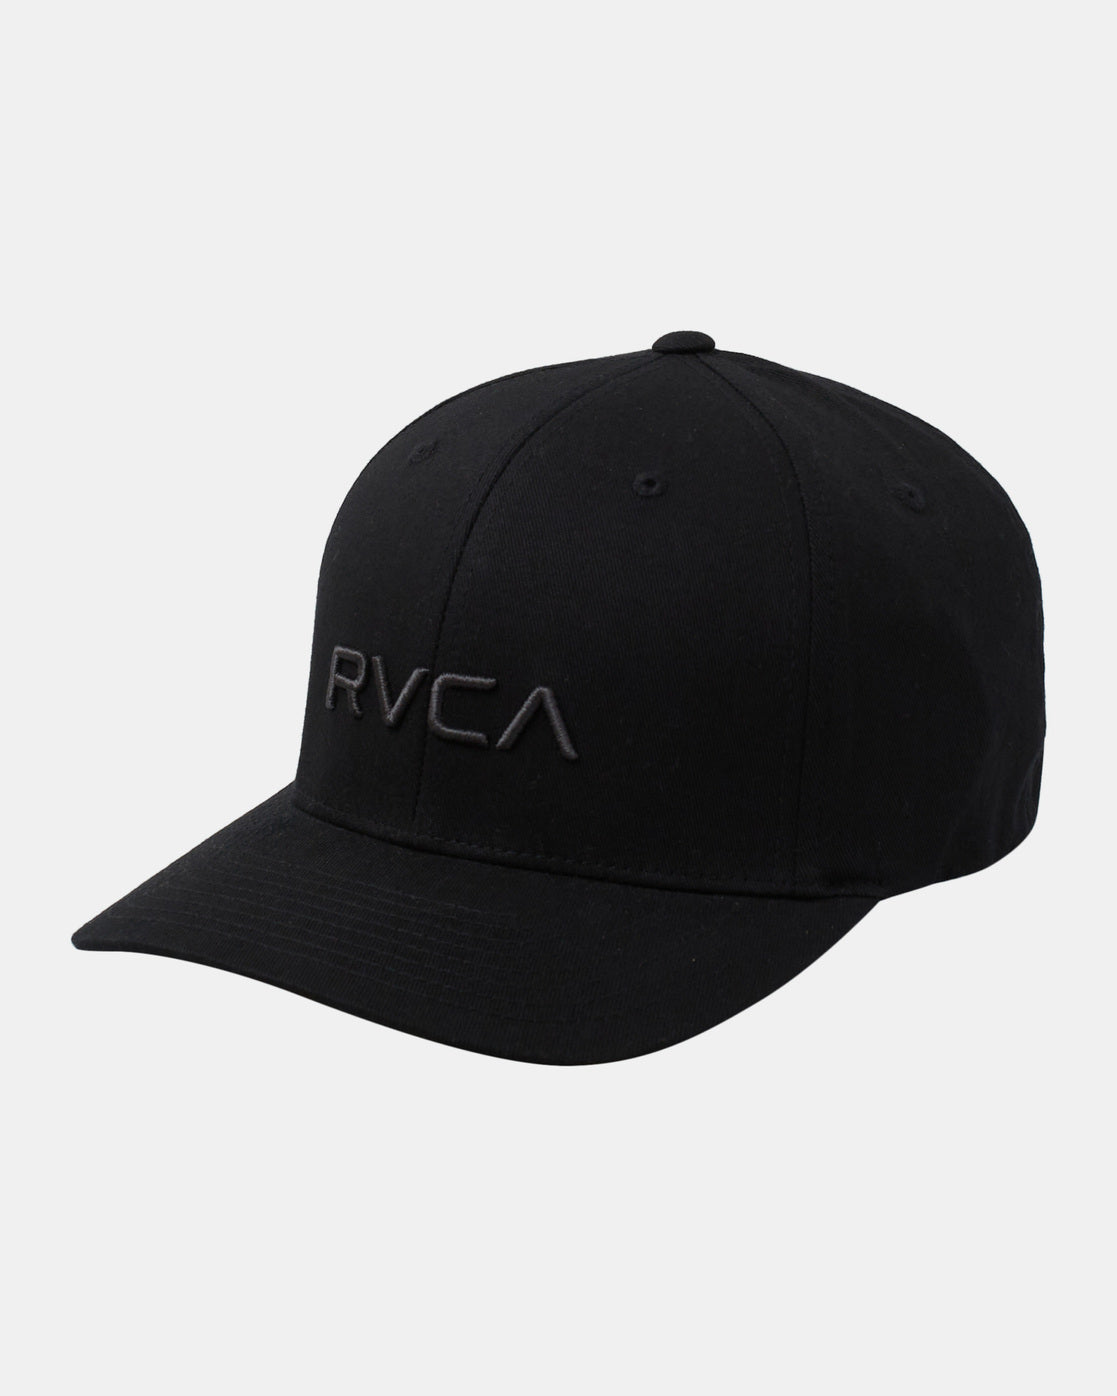 Men's RVCA Flex Fit